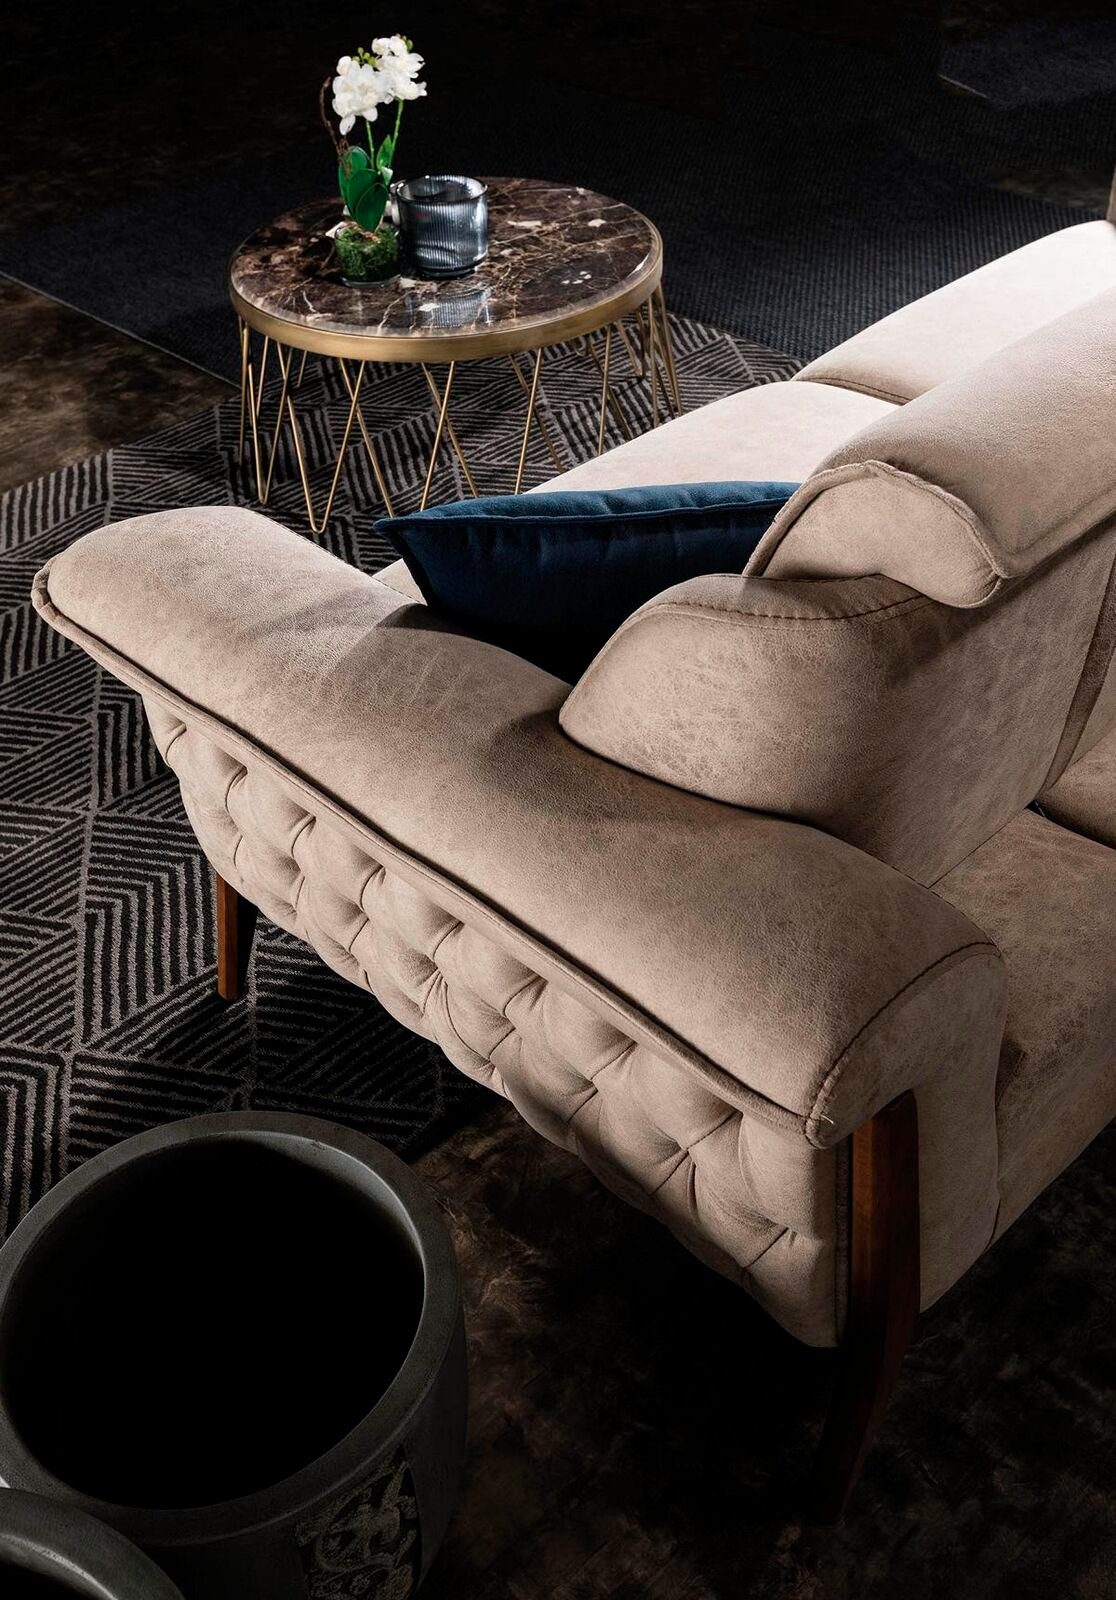 JVmoebel Sofa Beiger Dreisitzer Luxus Stilvolles Made Moderne Couch Teile, 1 Sofa Design, in Europe 3-Sitzer